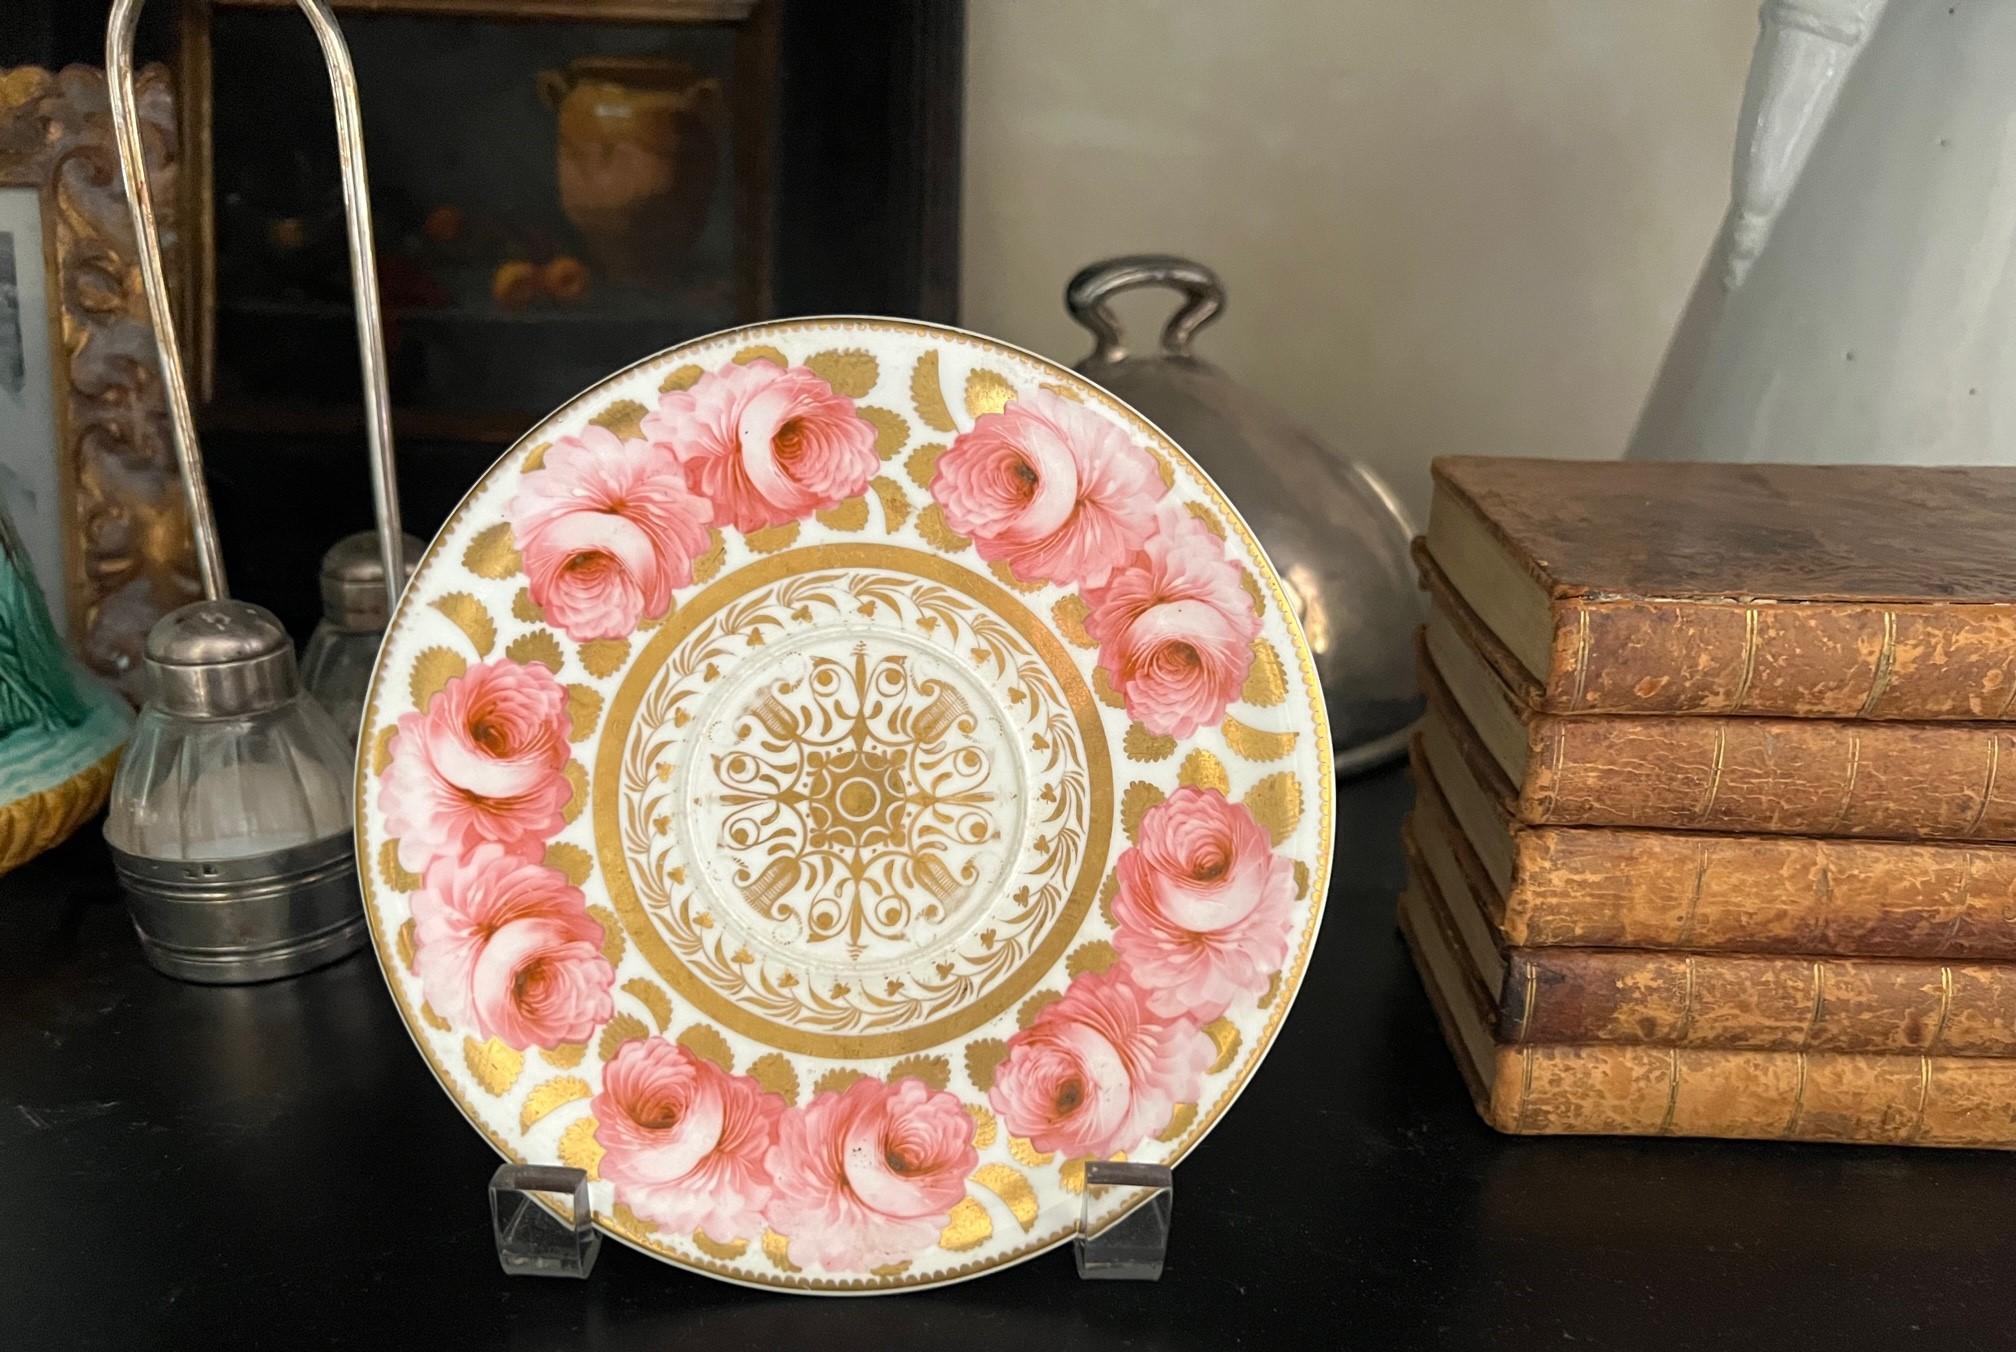 Fein bemalter Teller / Untertasse mit rosa Rosen und vergoldeten Blättern aus der Regency-Zeit, hergestellt in England um 1820.